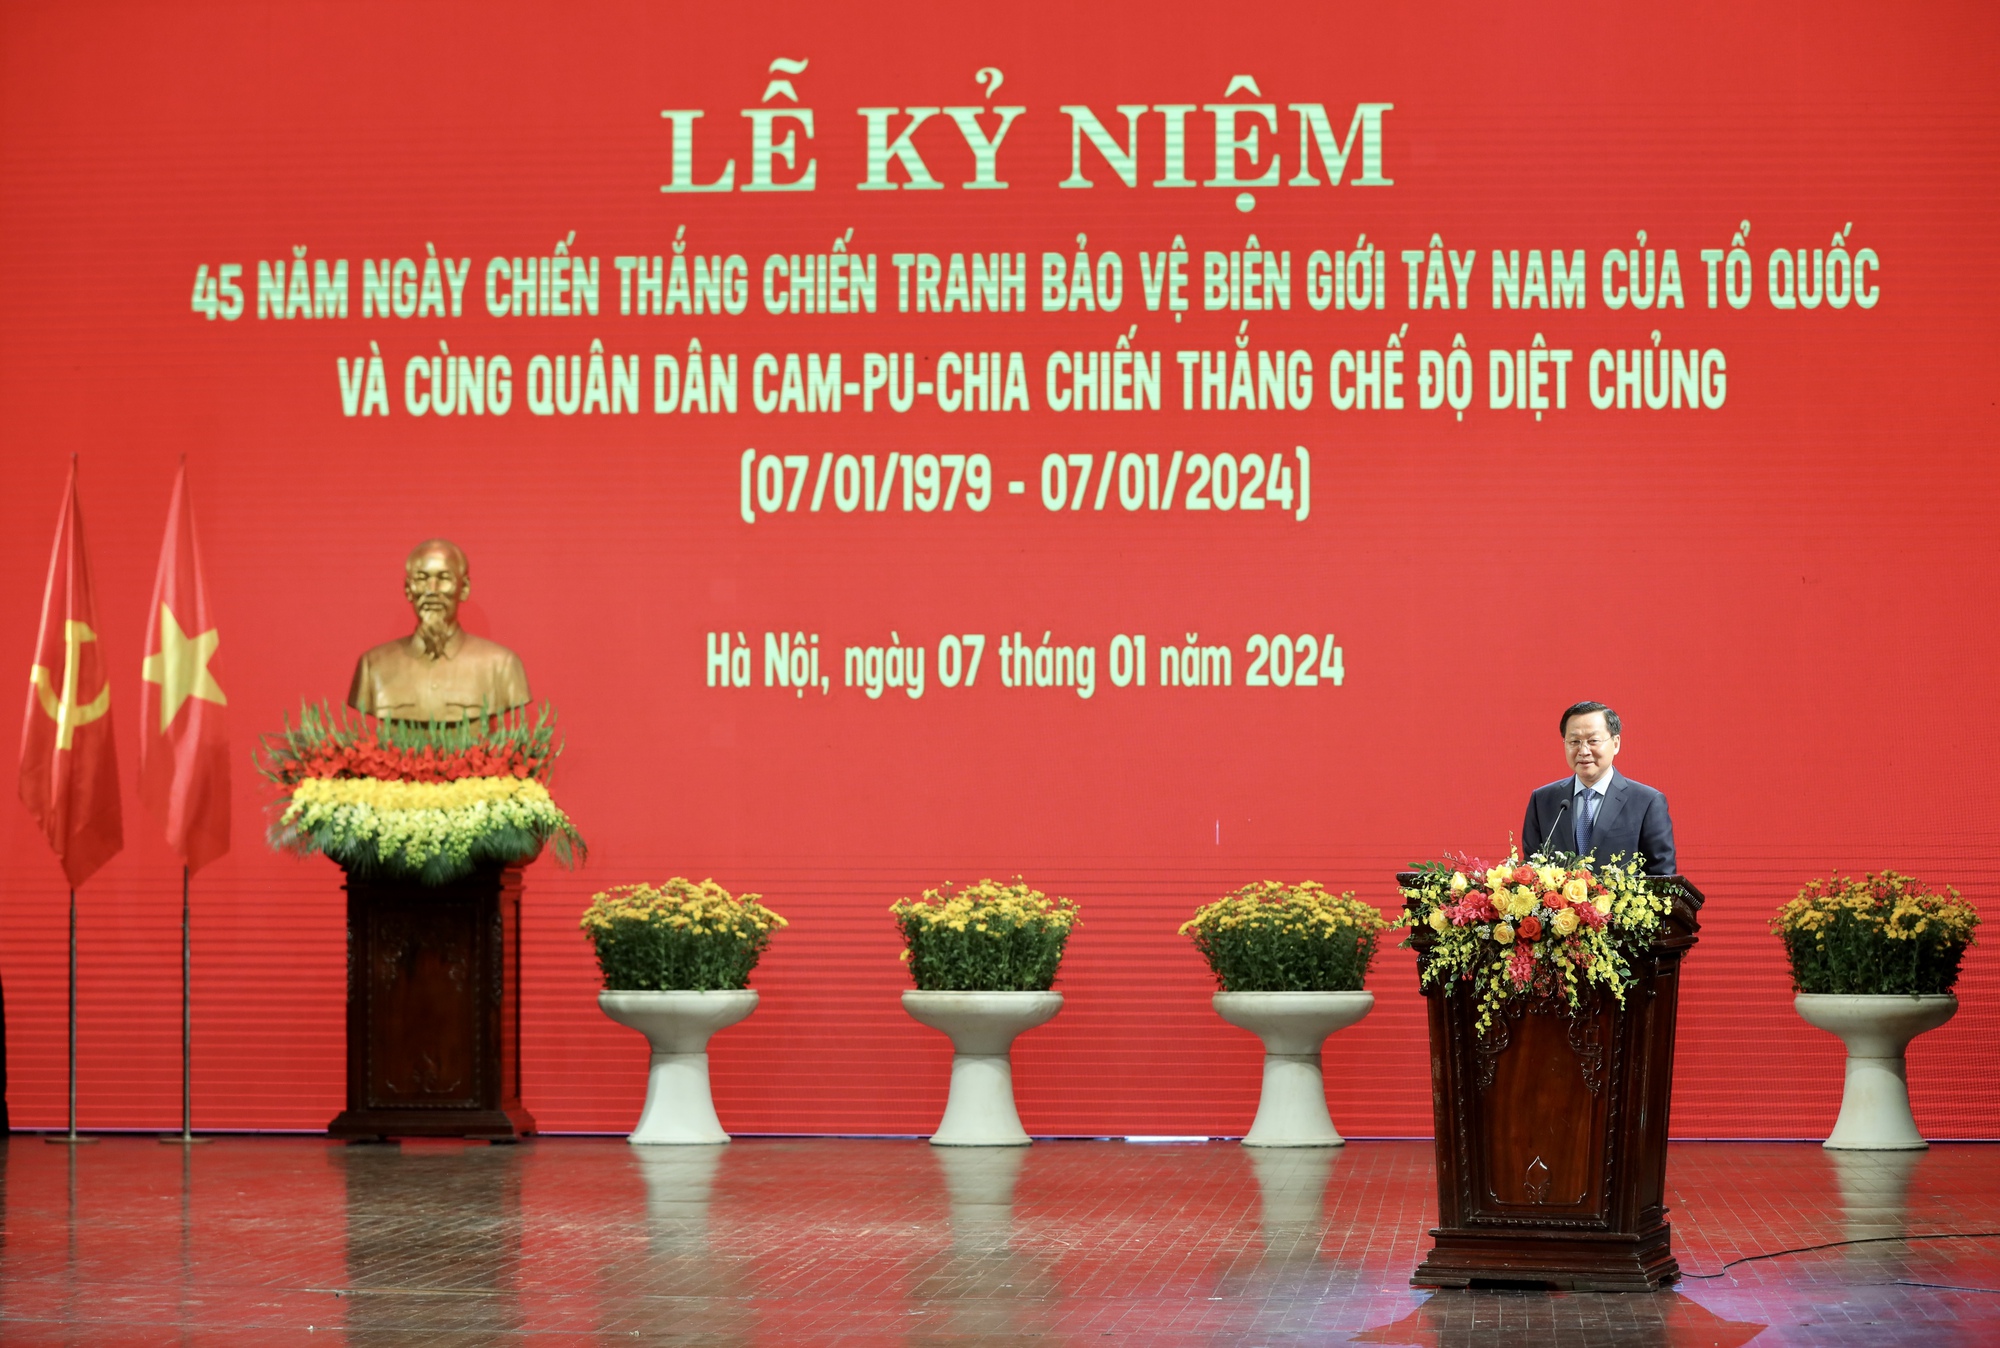 Đồng chí Lê Minh Khái: Đảng, Nhà nước, quân đội và nhân dân Việt Nam đã thực hiện quyền tự vệ chính đáng của mình, đập tan các hành động xâm lược, cùng với lực lượng vũ trang và nhân dân Campuchia đánh đổ chế độ diệt chủng tàn bạo vào ngày 07 tháng Giêng năm 1979.